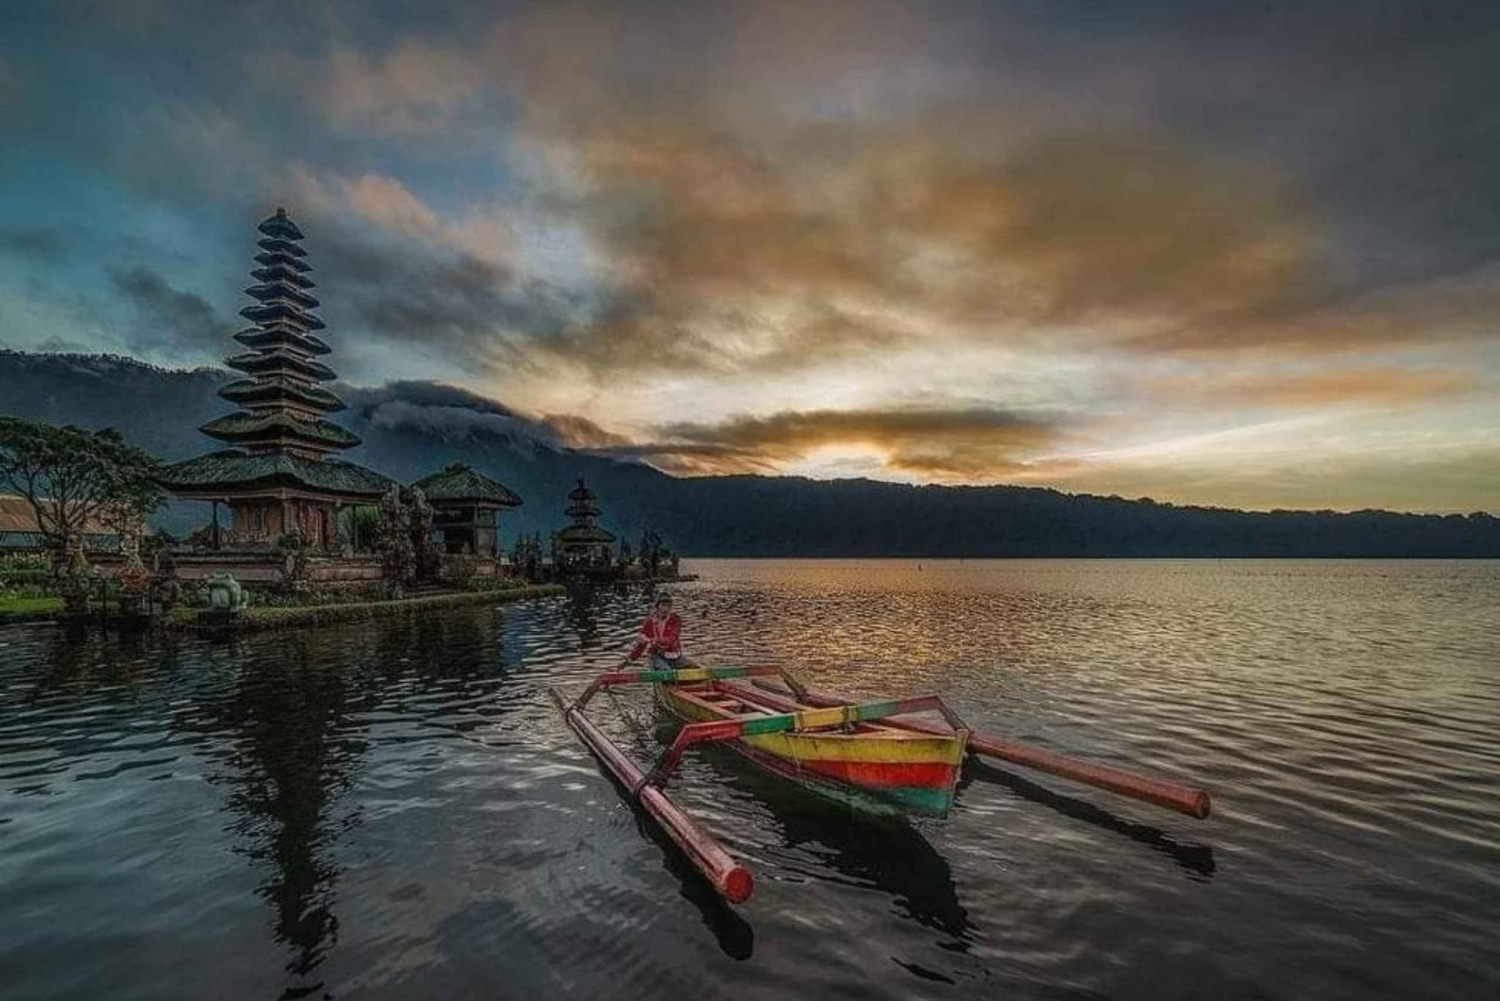 North Bali : Sunrise at Ulundanu Temple & Sekumpul Waterfall